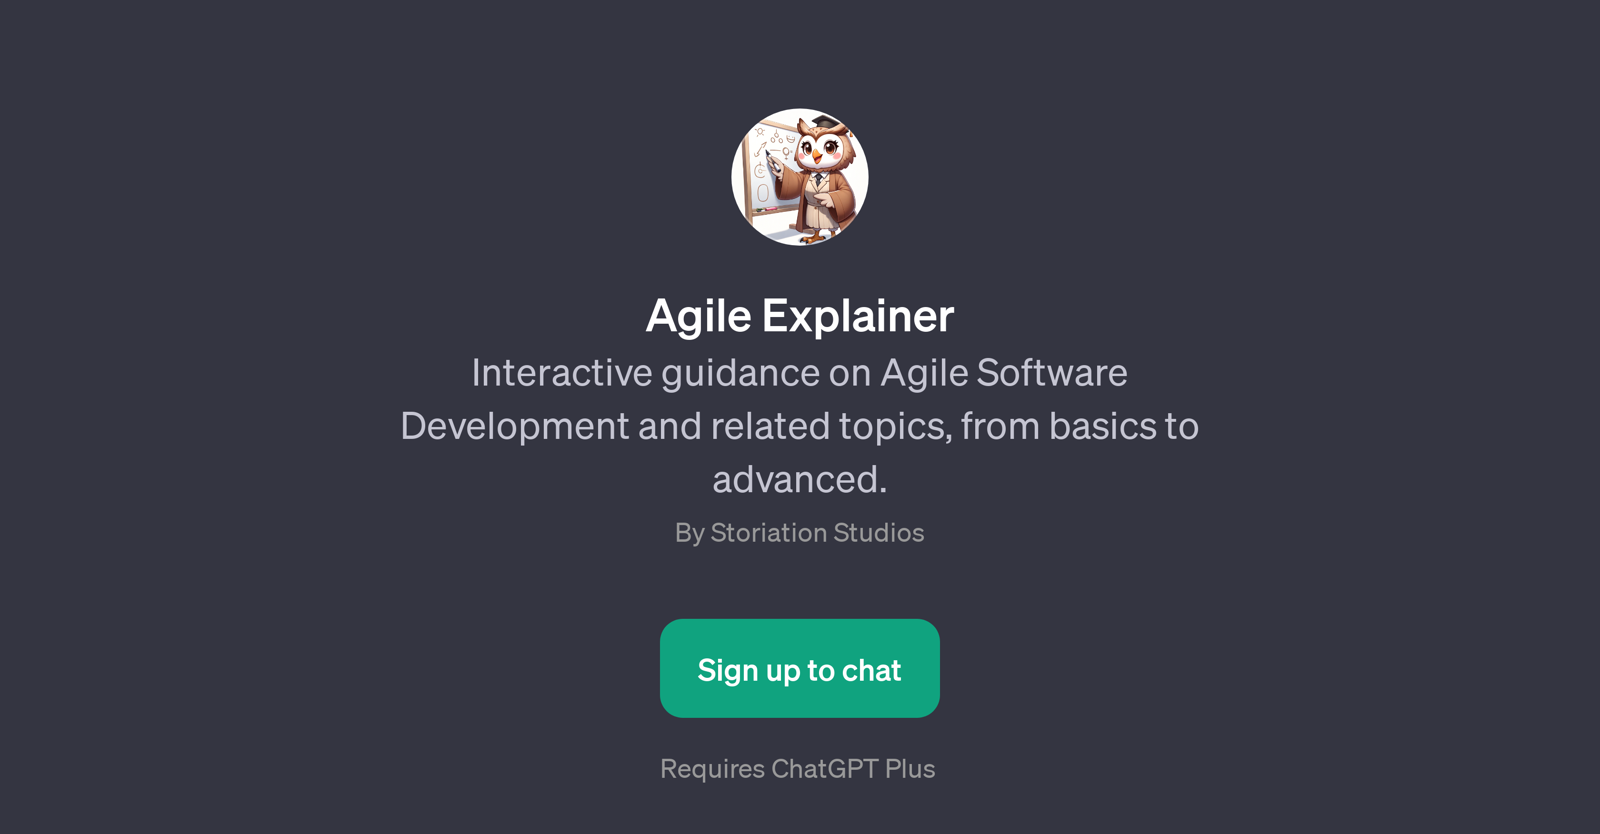 Agile Explainer website